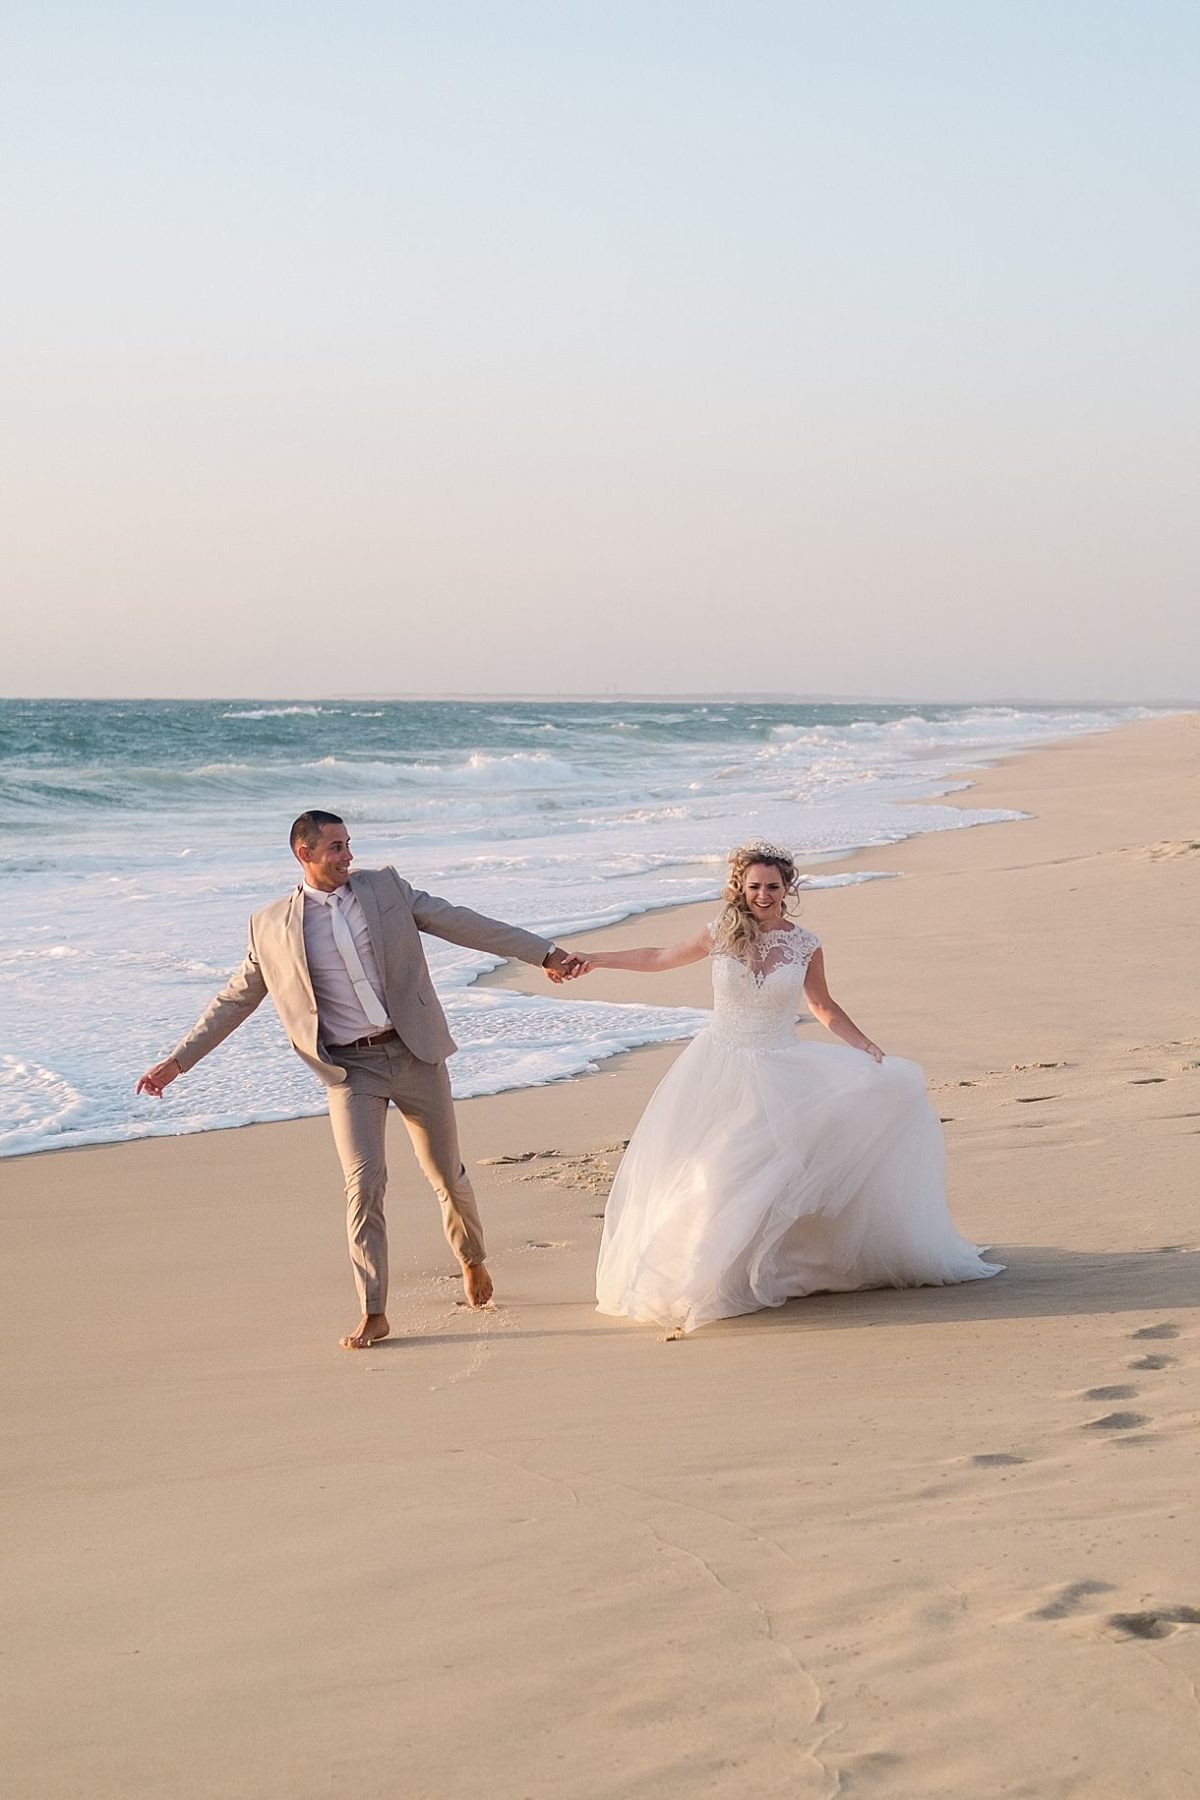 after wedding à l'ocean sur la plage de Biscarrosse à coté de la teste de Buch avec pixaile photography photographe de mariage professionnel